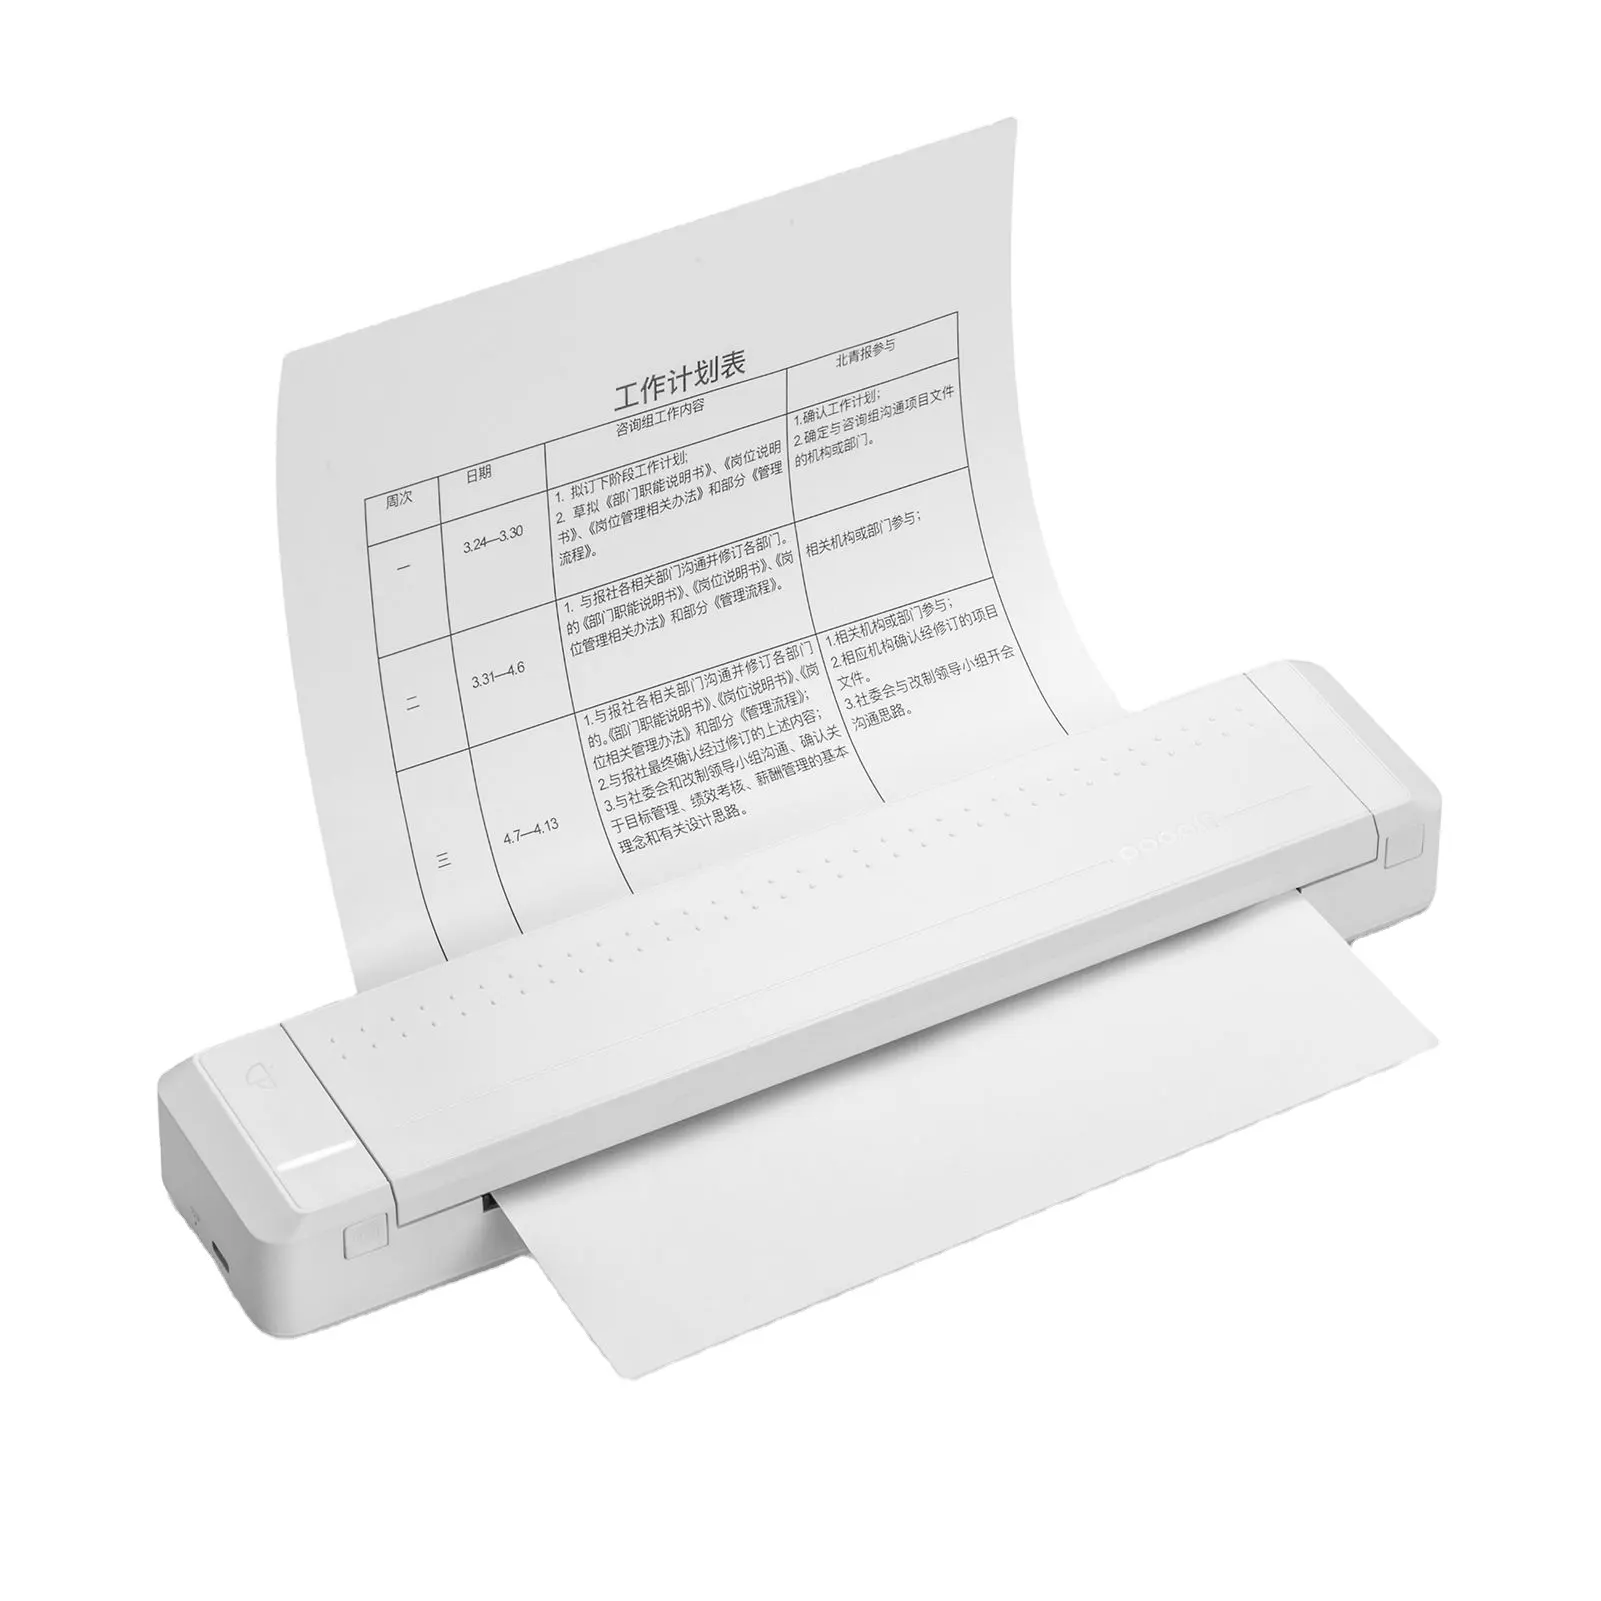 JEPOD Poooli A4 imprimante Portable Mini BT sans fil pour Photos, imprimante thermique pour documents A4